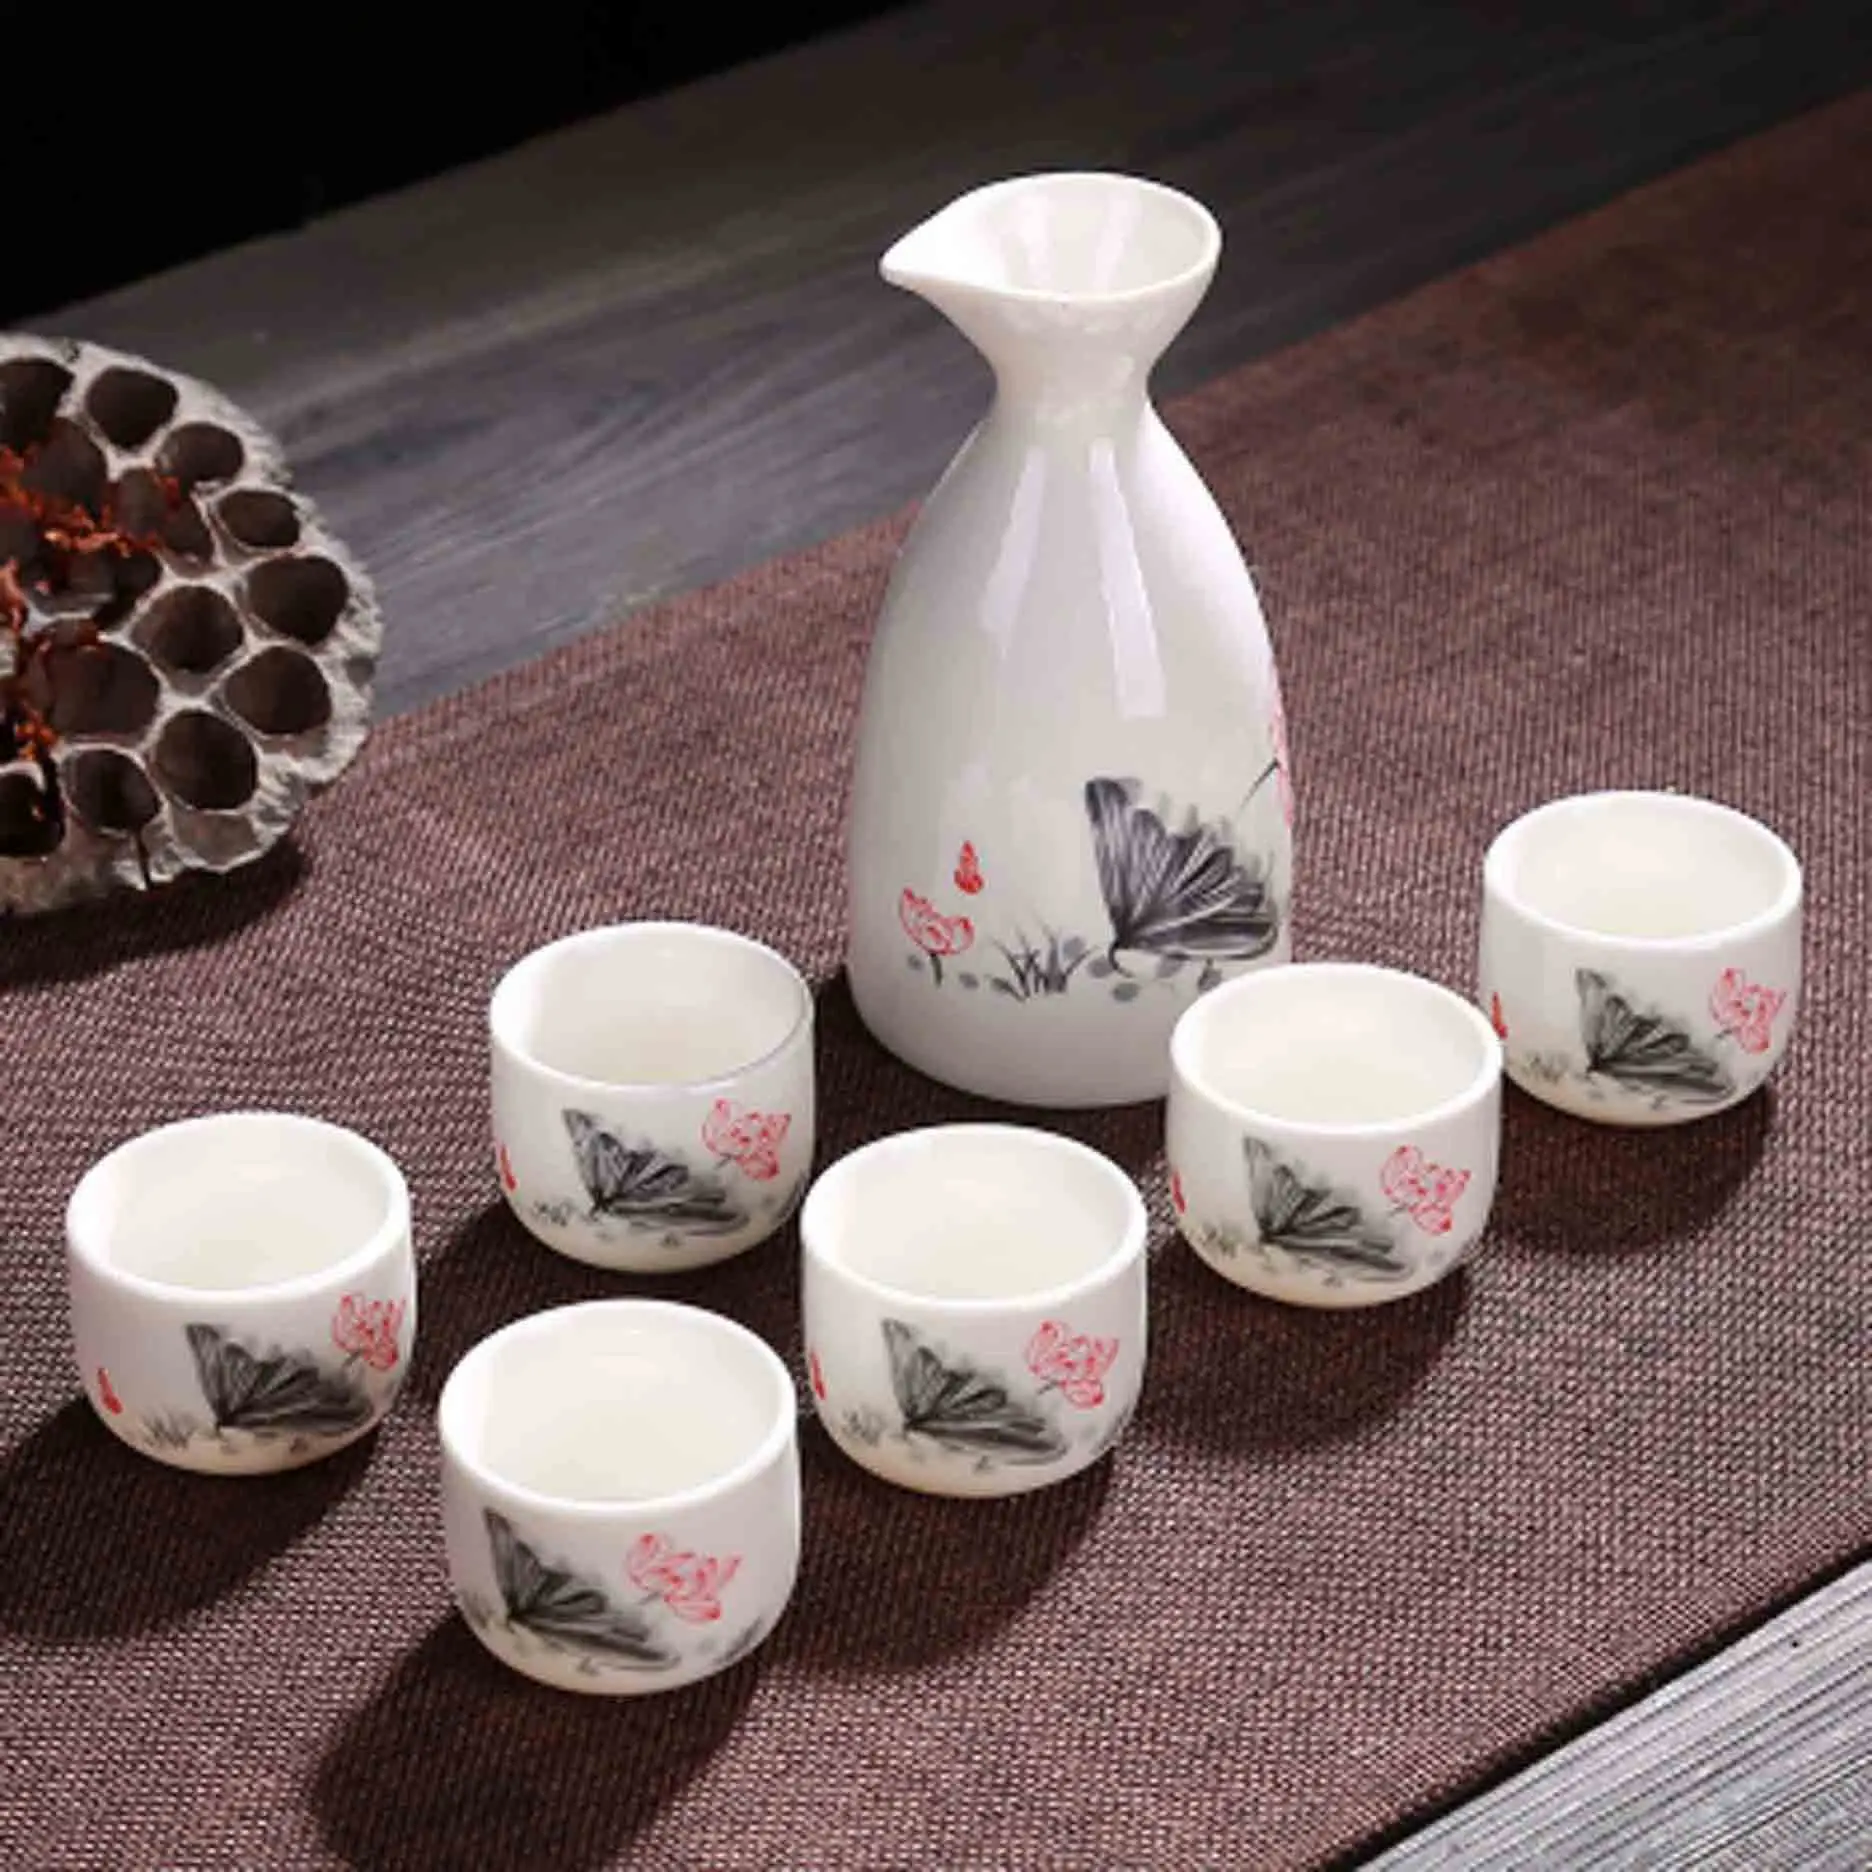 7 шт./компл. Керамика чашки для Саке набор японский Флагон емкость для ликера чашка для дома, кухни, офиса Флагон ликера посуда для напитков творческие подарки - Цвет: Style 2